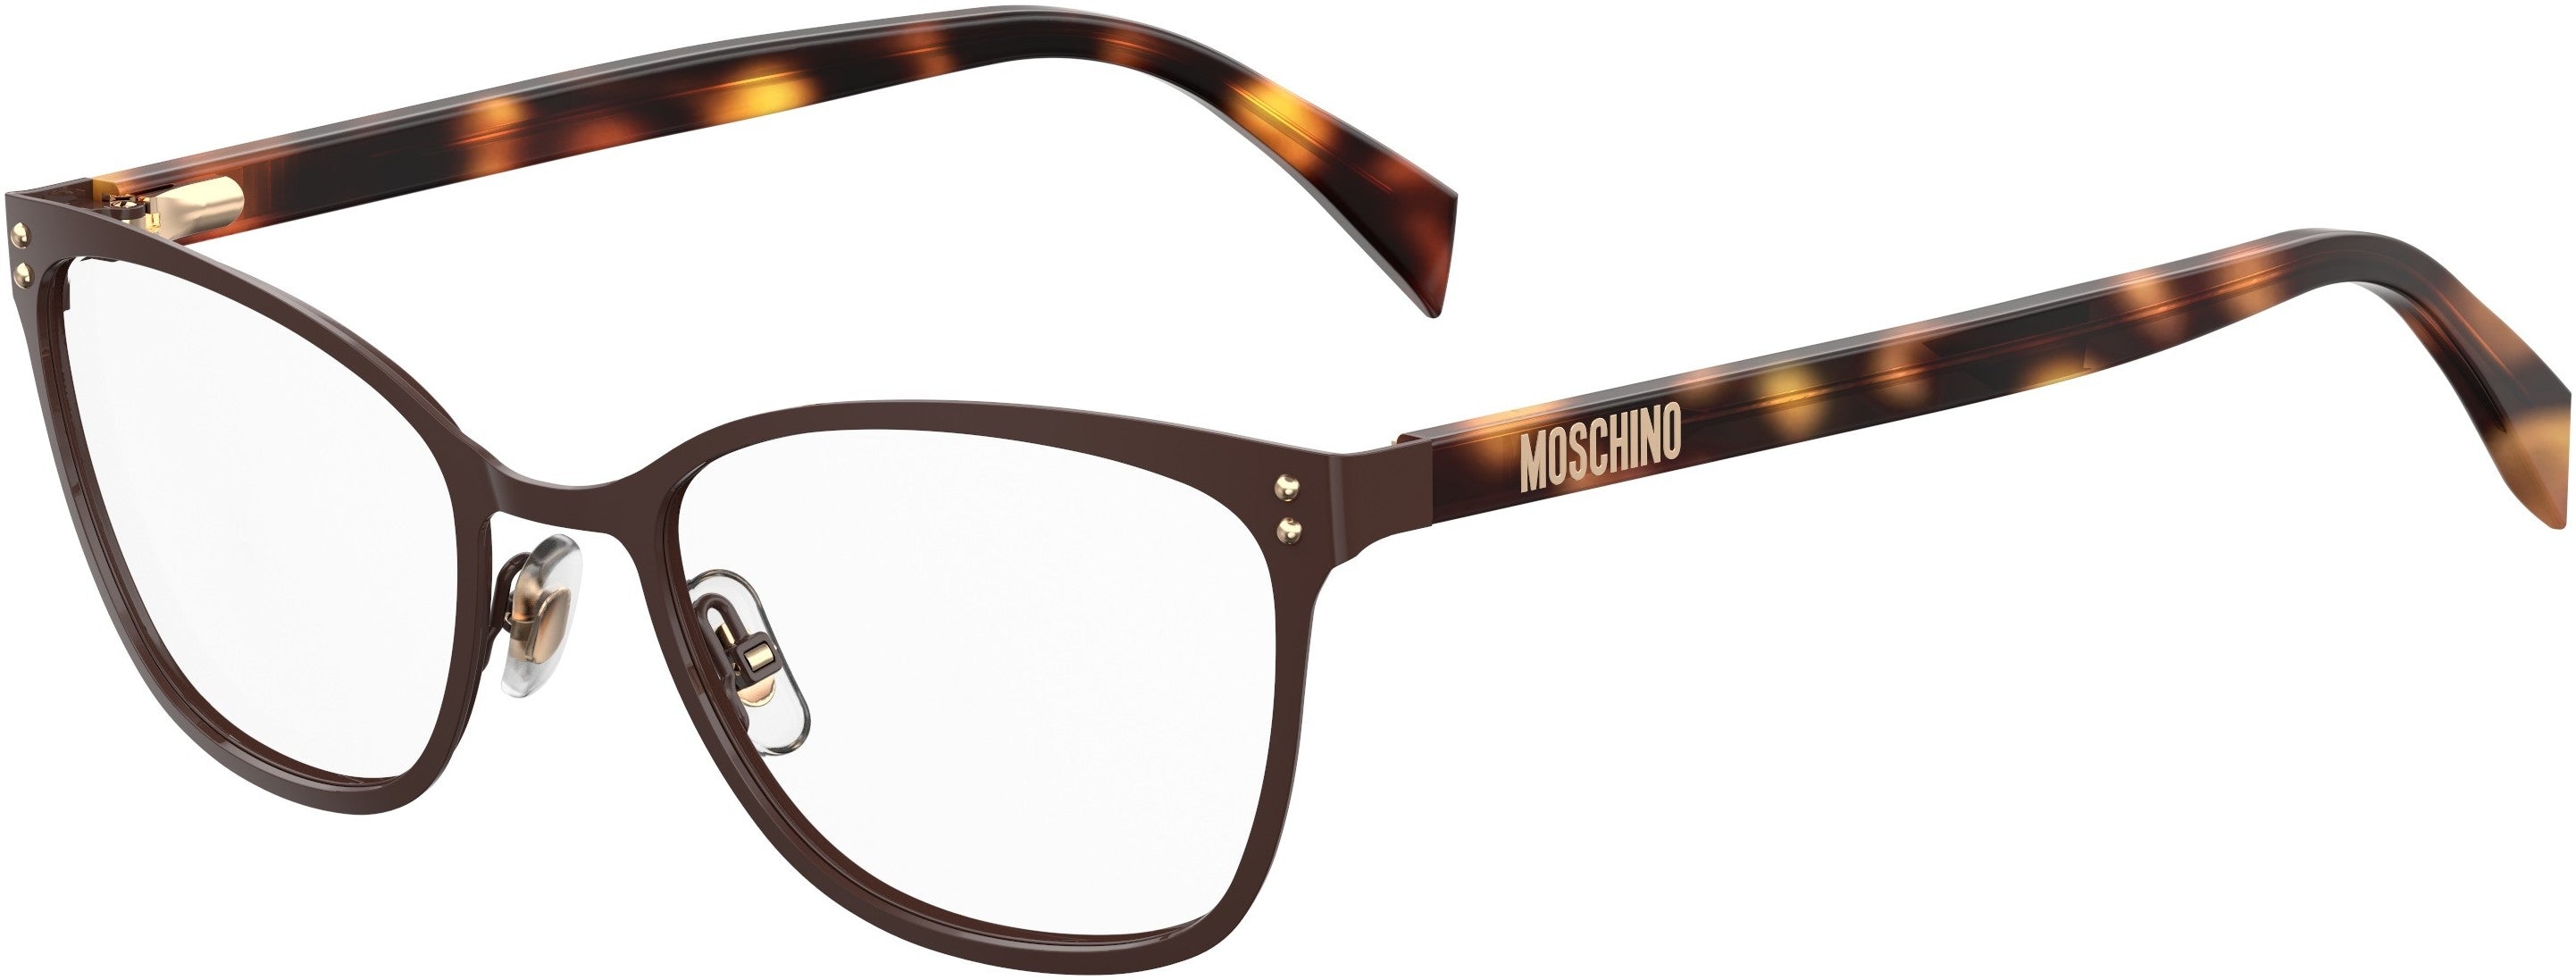  Moschino 511 Square Eyeglasses 009Q-009Q  Brown (00 Demo Lens)